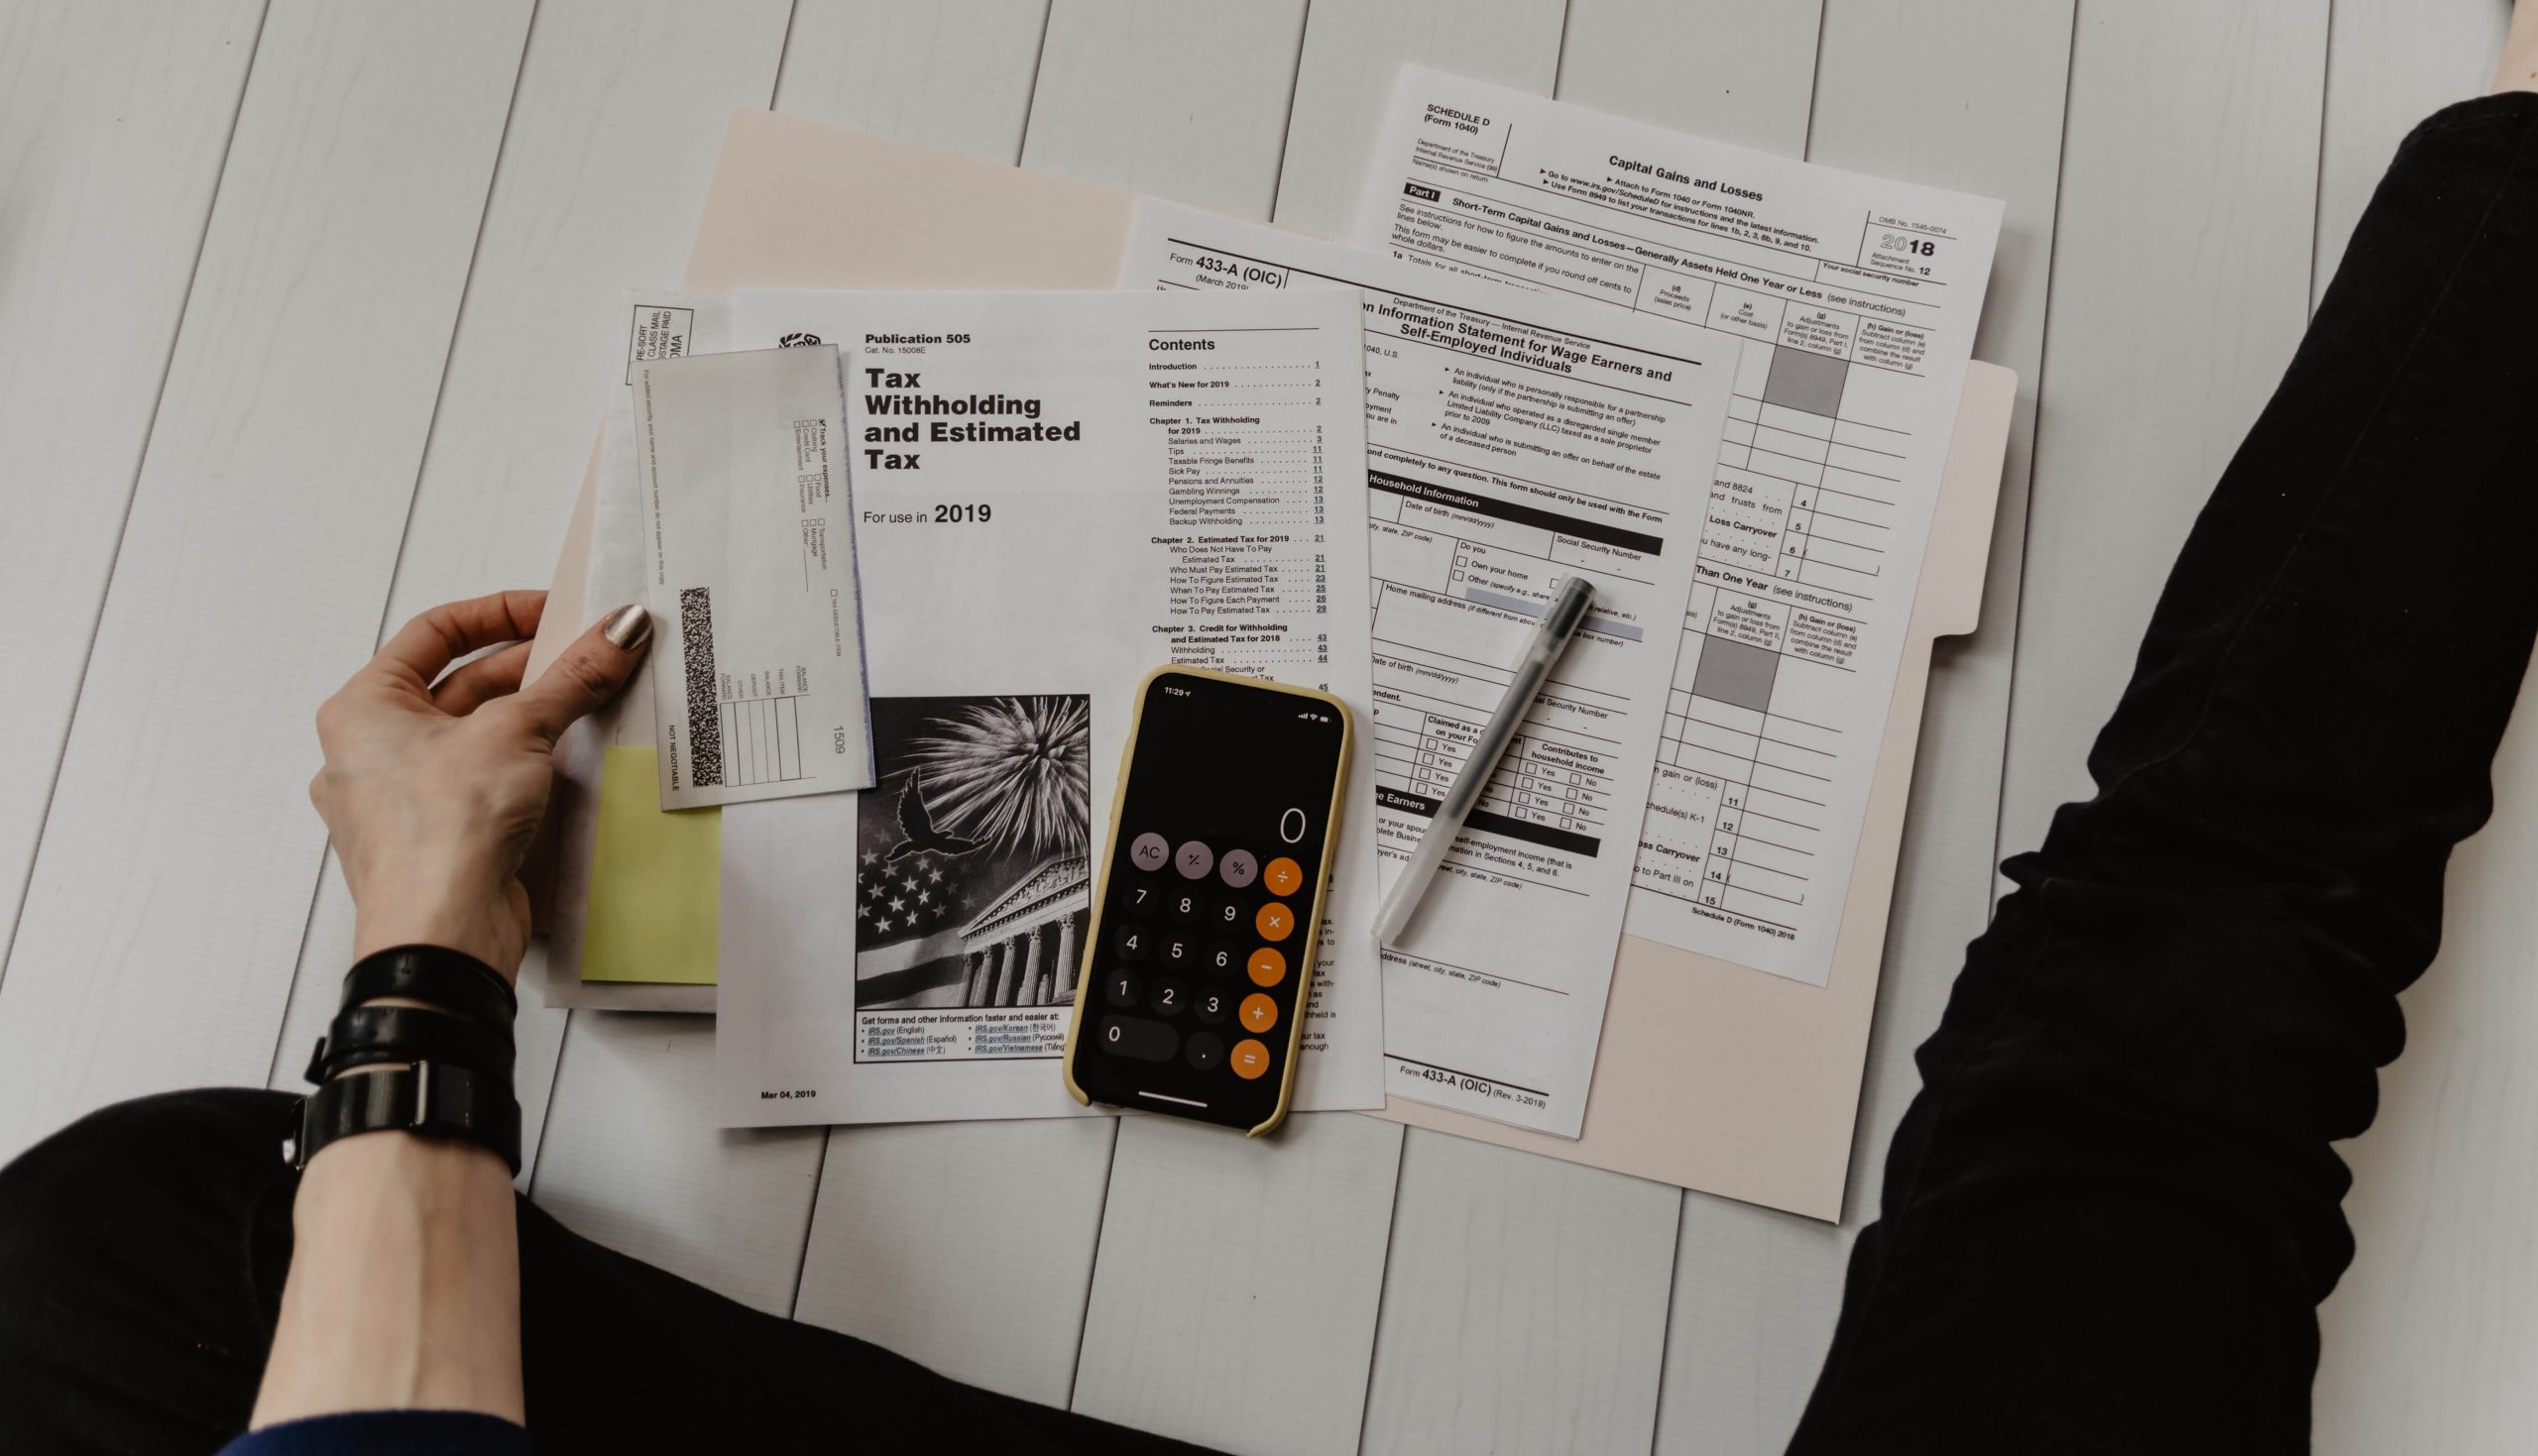 Imagen que muestra varias facturas por pagar, una calculadora y un lapicero representando los indicadores financieros de endeudamiento